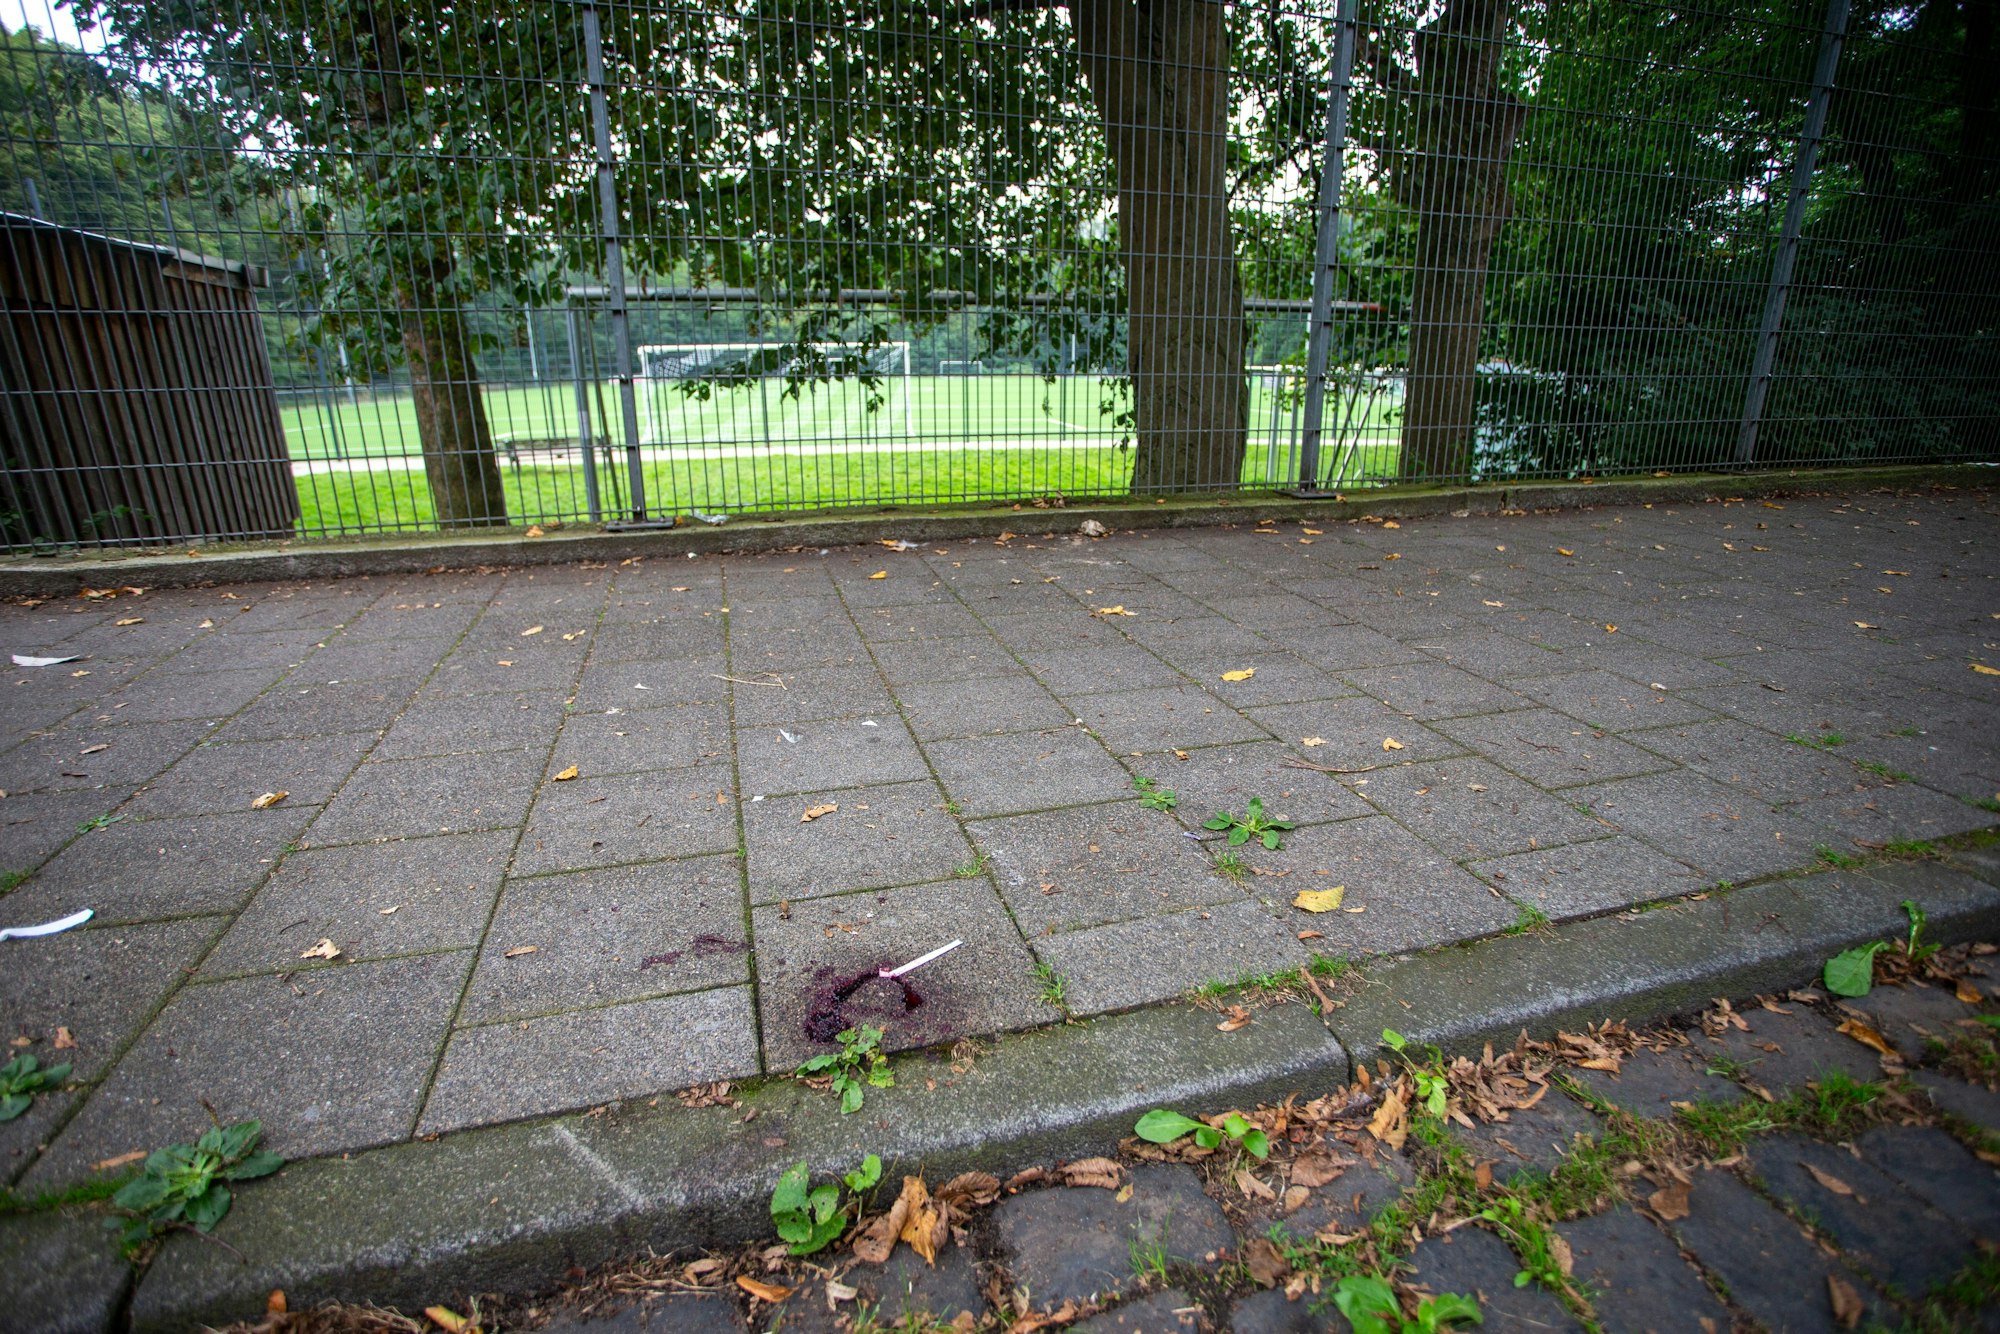 Blutflecken markieren den Tatort am Sportplatz in Buchheim.